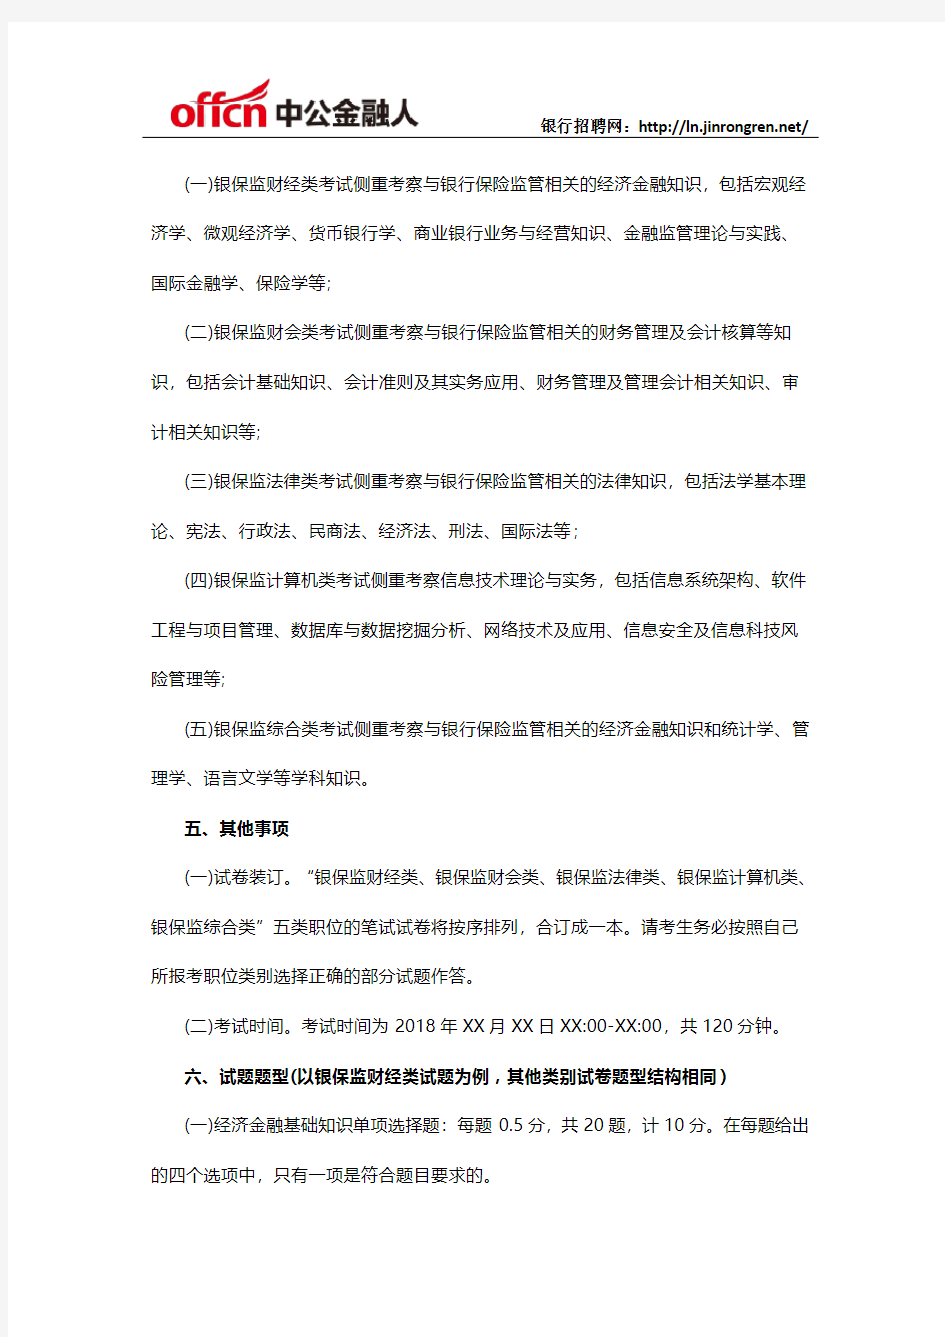 2019中国银保监会公务员录用考试专业科目笔试考试大纲